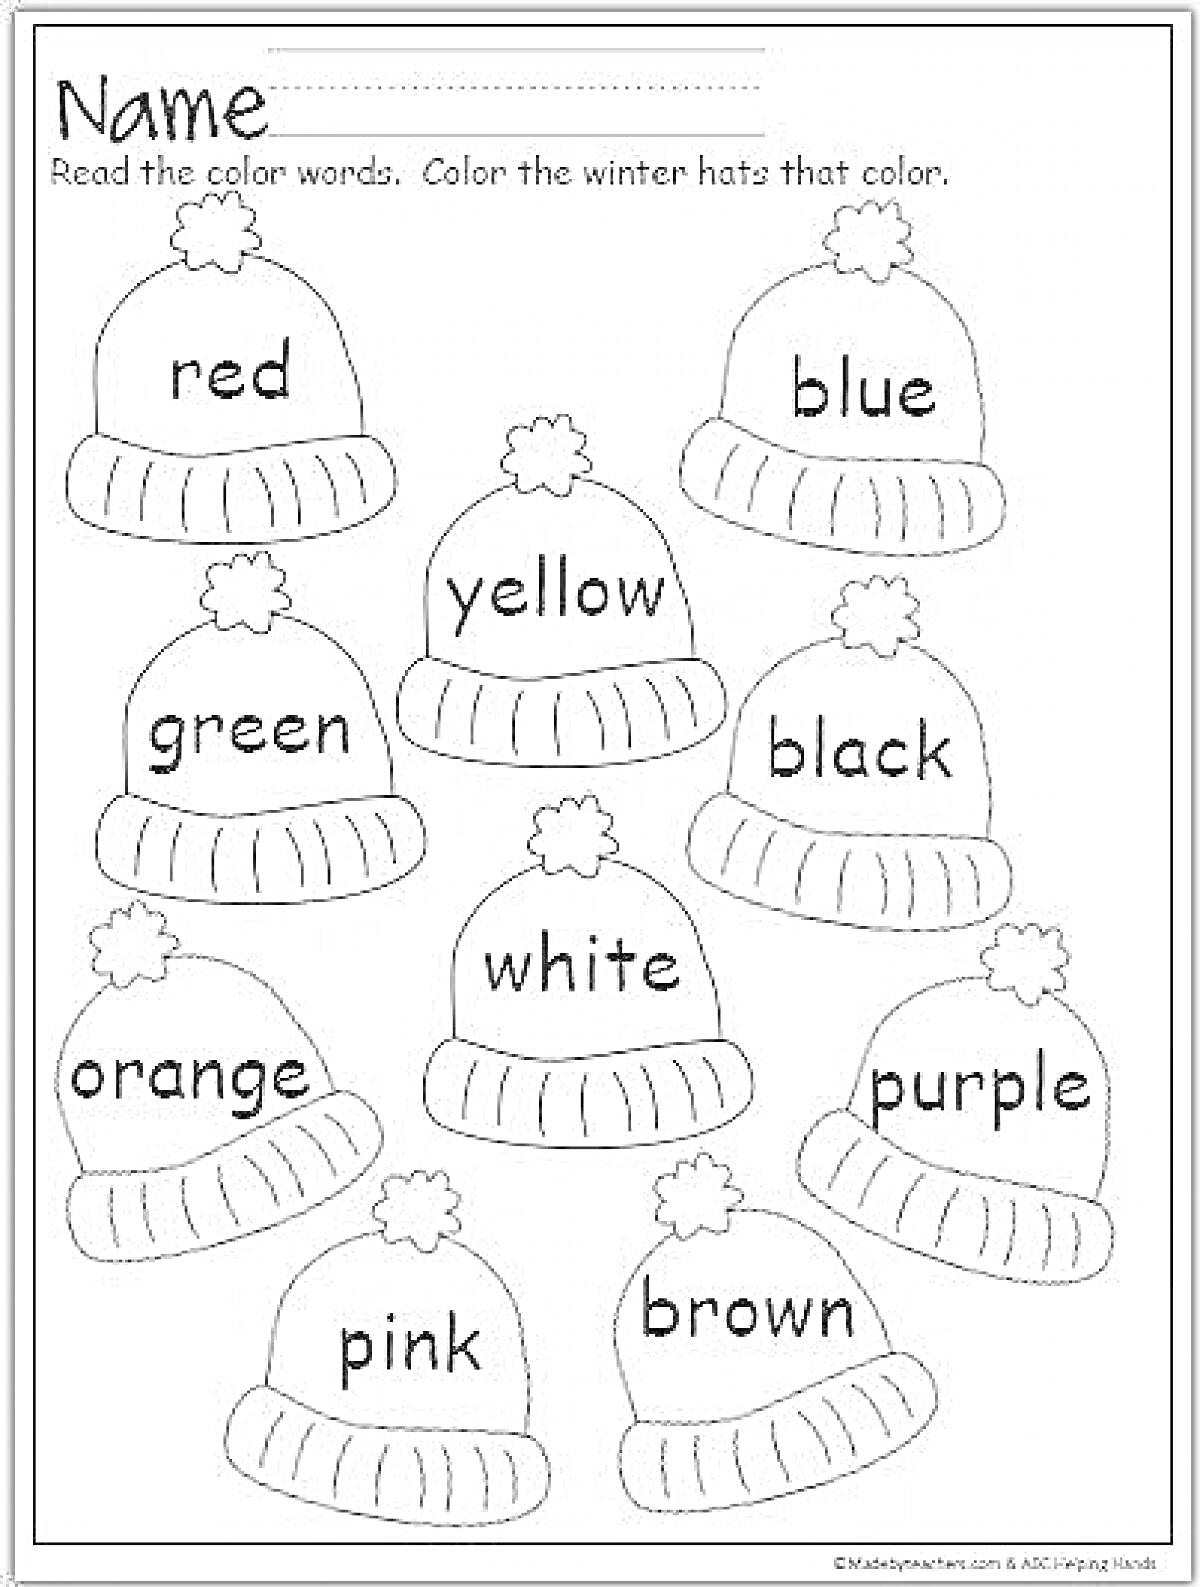 Раскраска Раскраска для детей с зимними шапками и заданиями по английскому языку на цвета